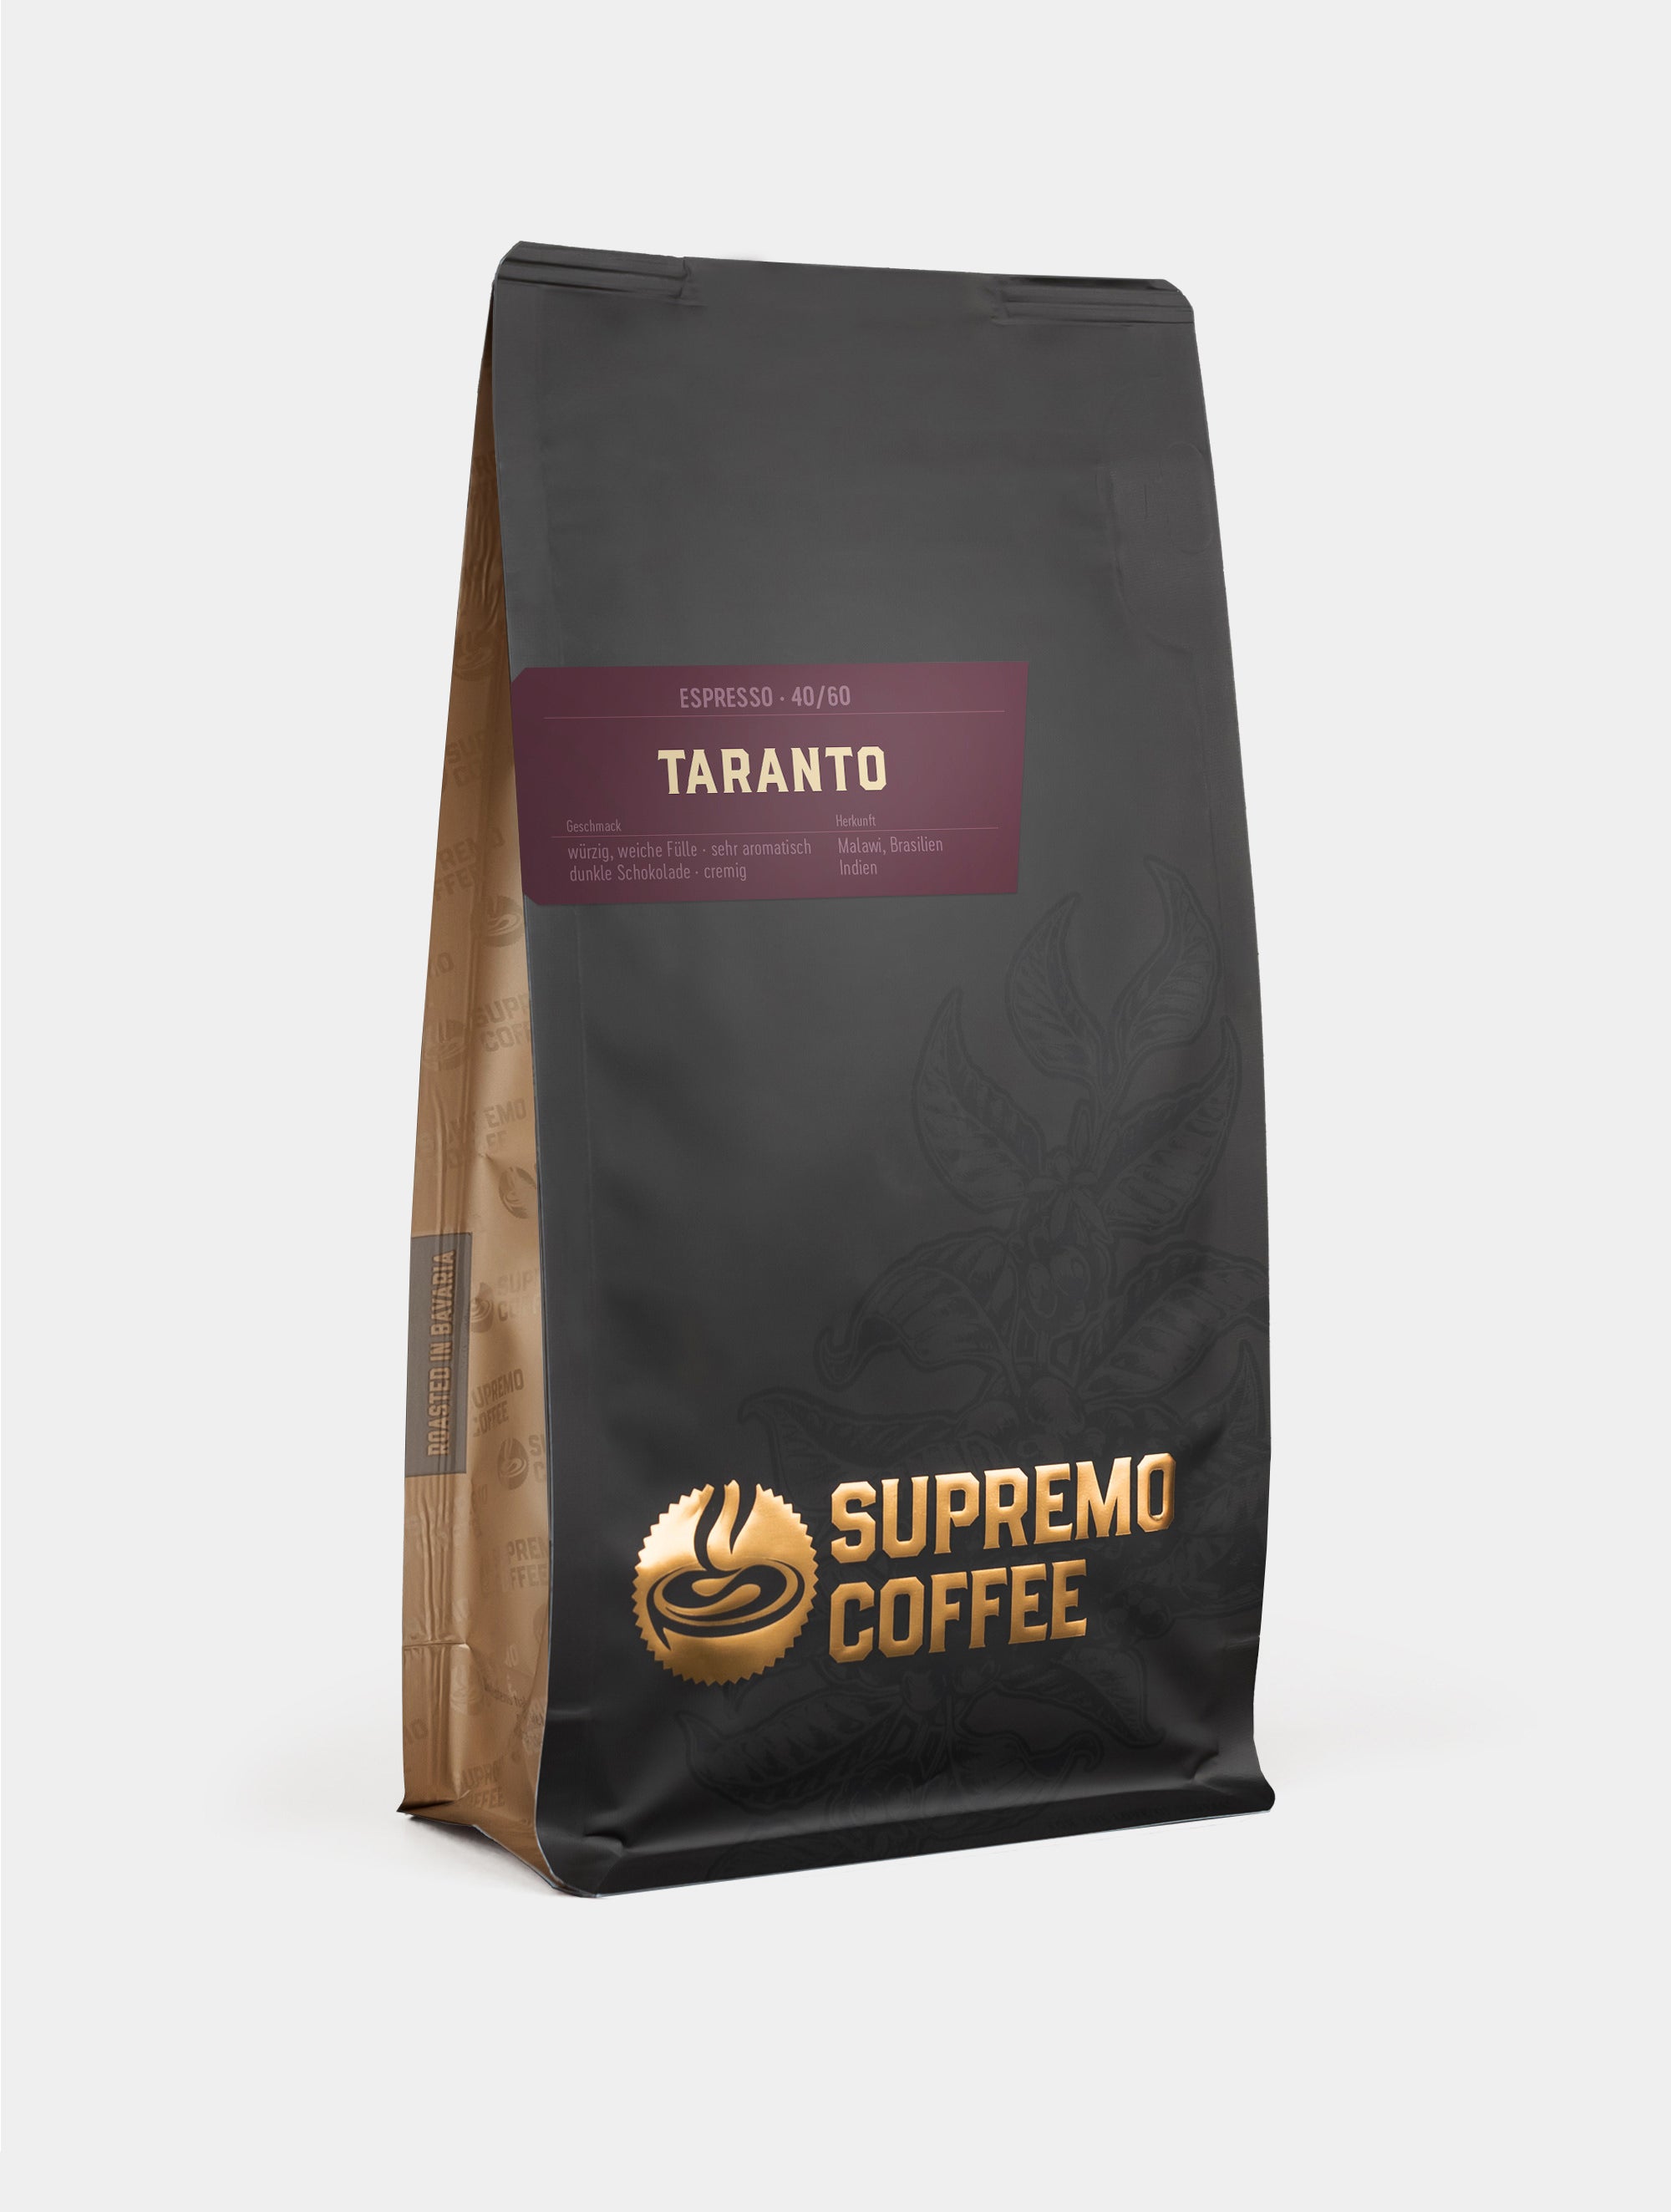 Taranto, Espresso 40/60 | SUPREMO Coffee